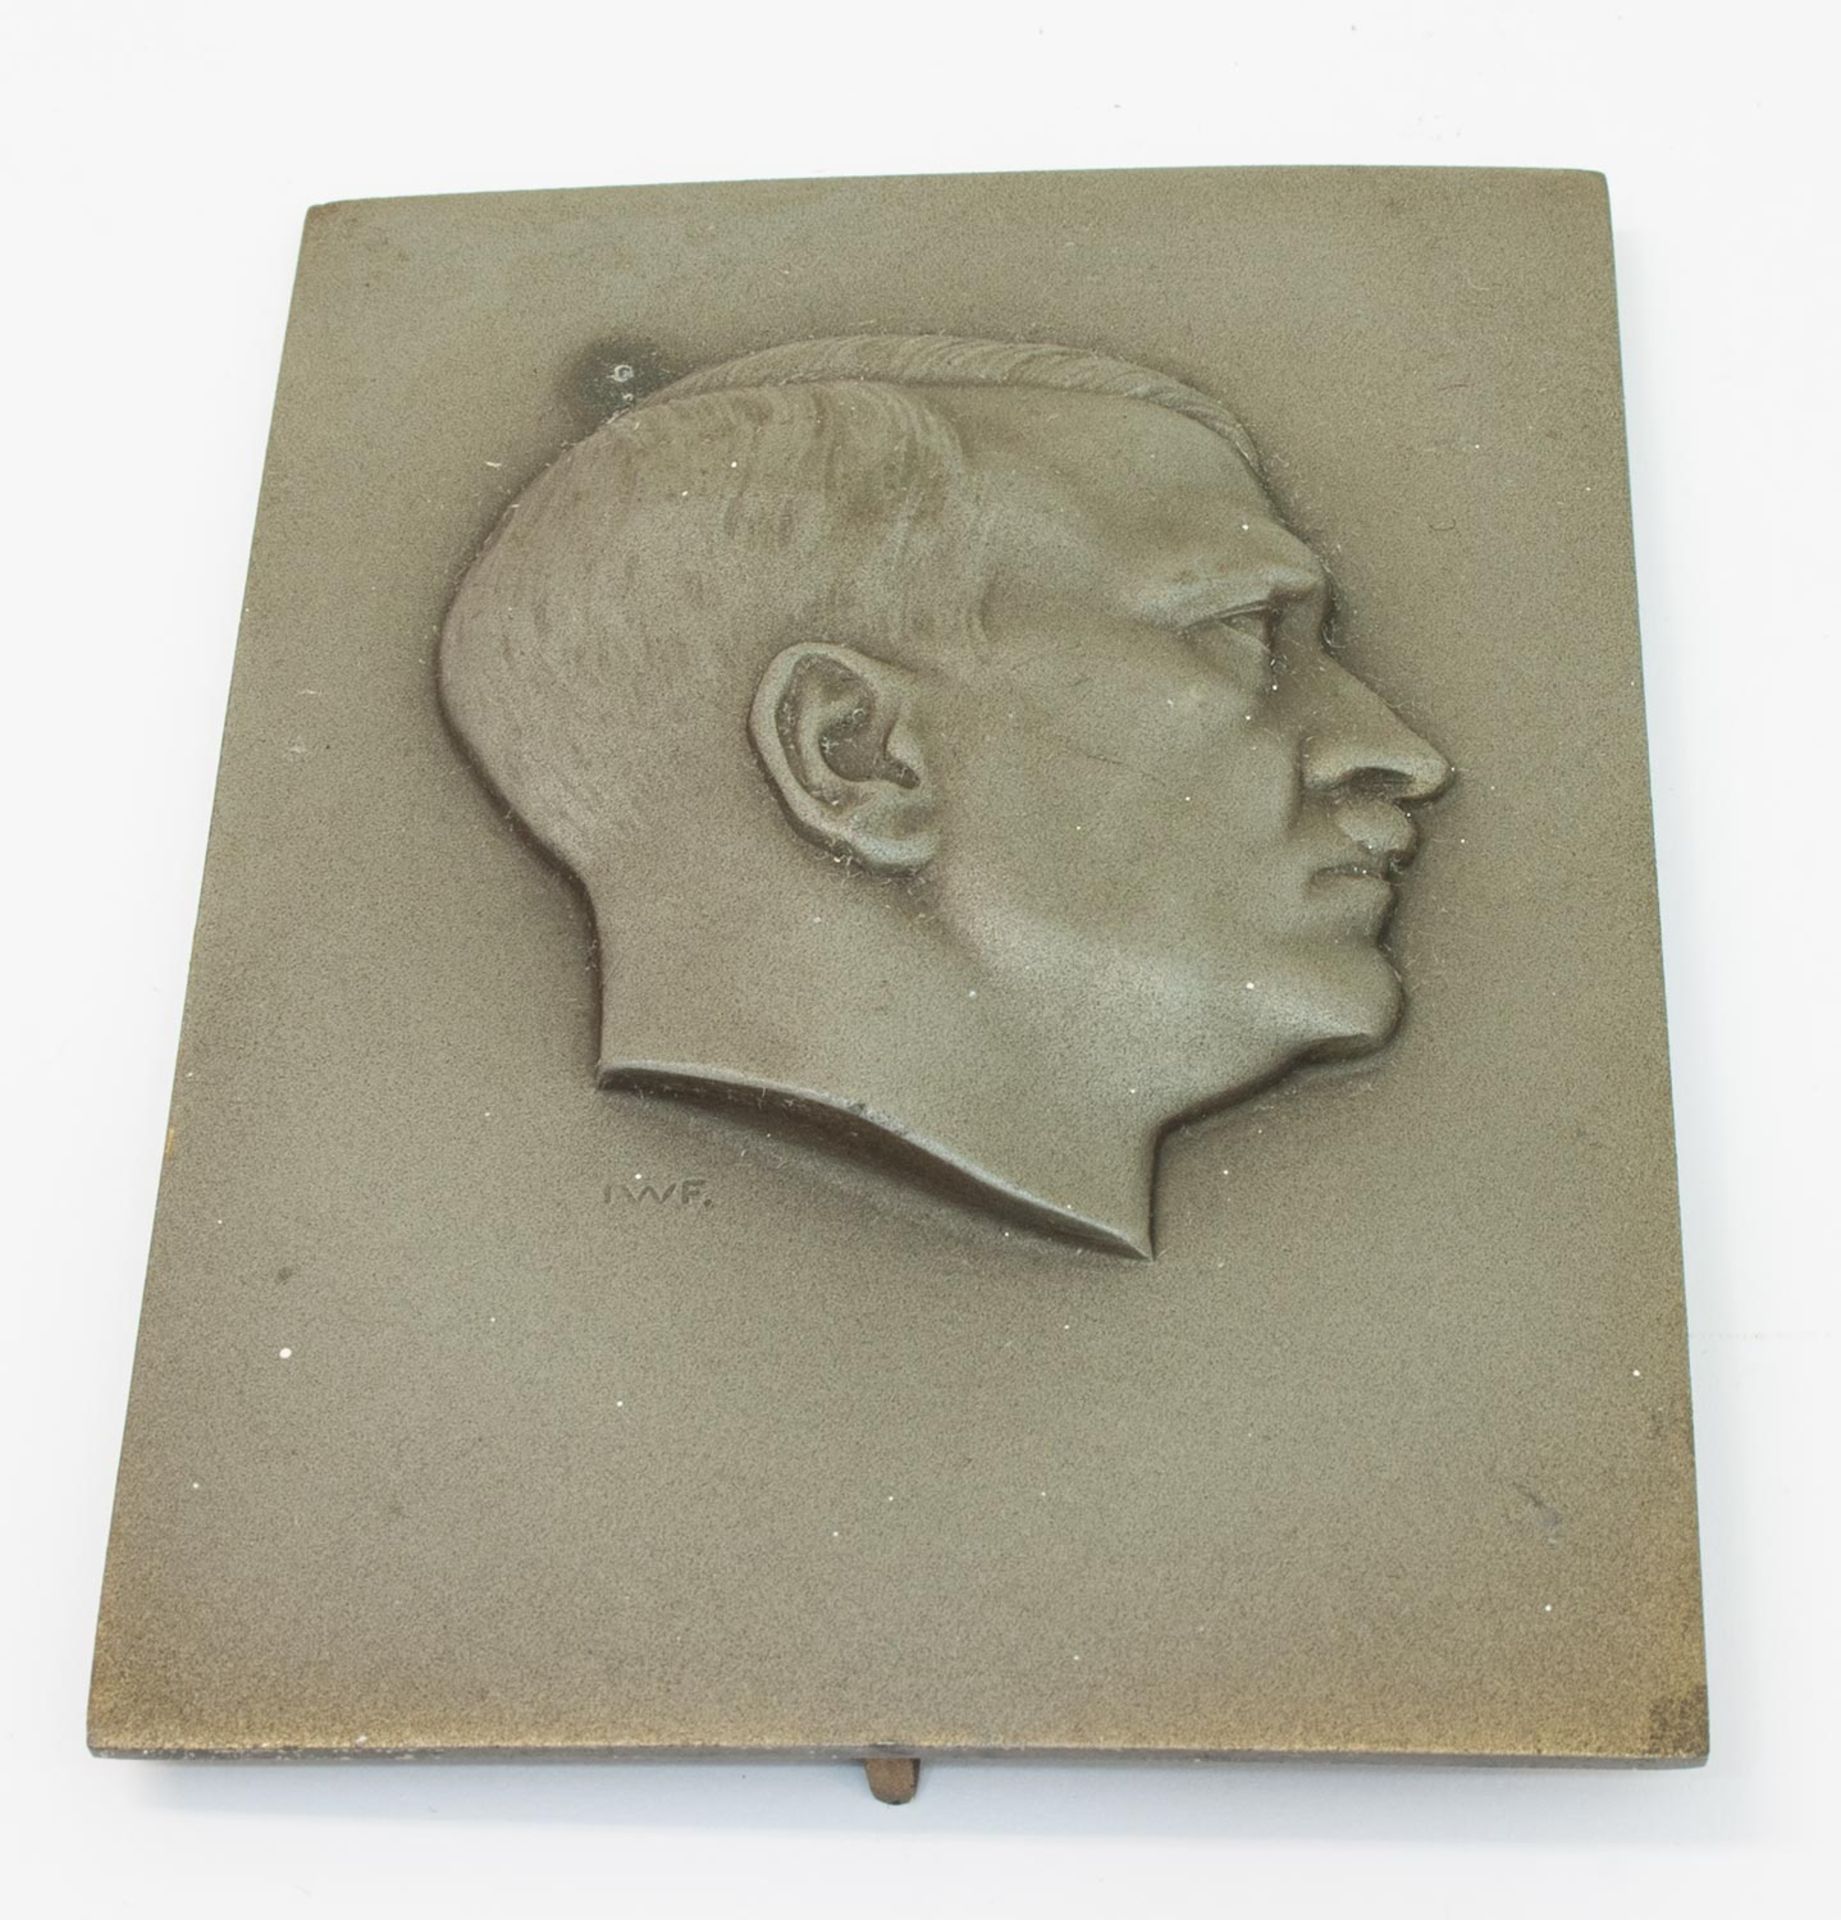 AufstellerProfilbild Adolf Hitler, sign. IWF, als Tischaufsteller, Metall, 12 x 8,5